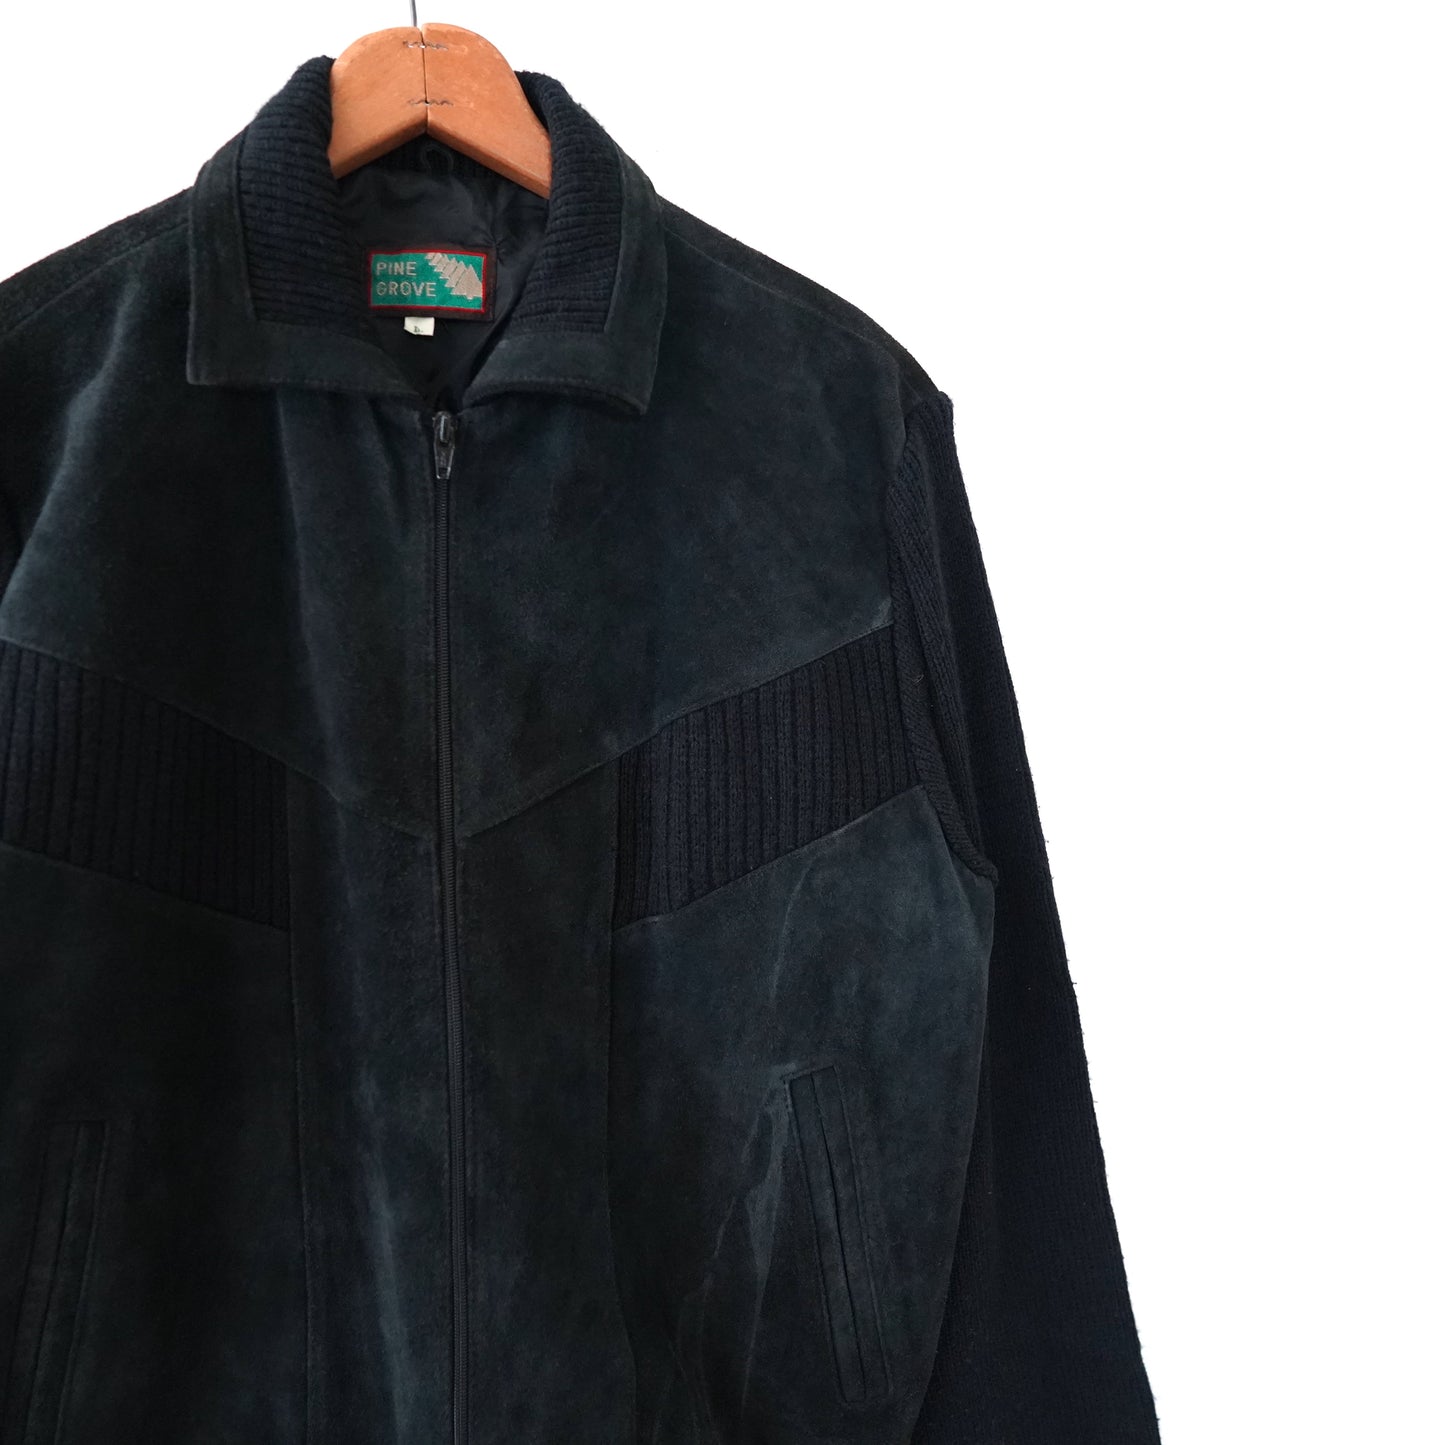 Leather & Knitwear jacket